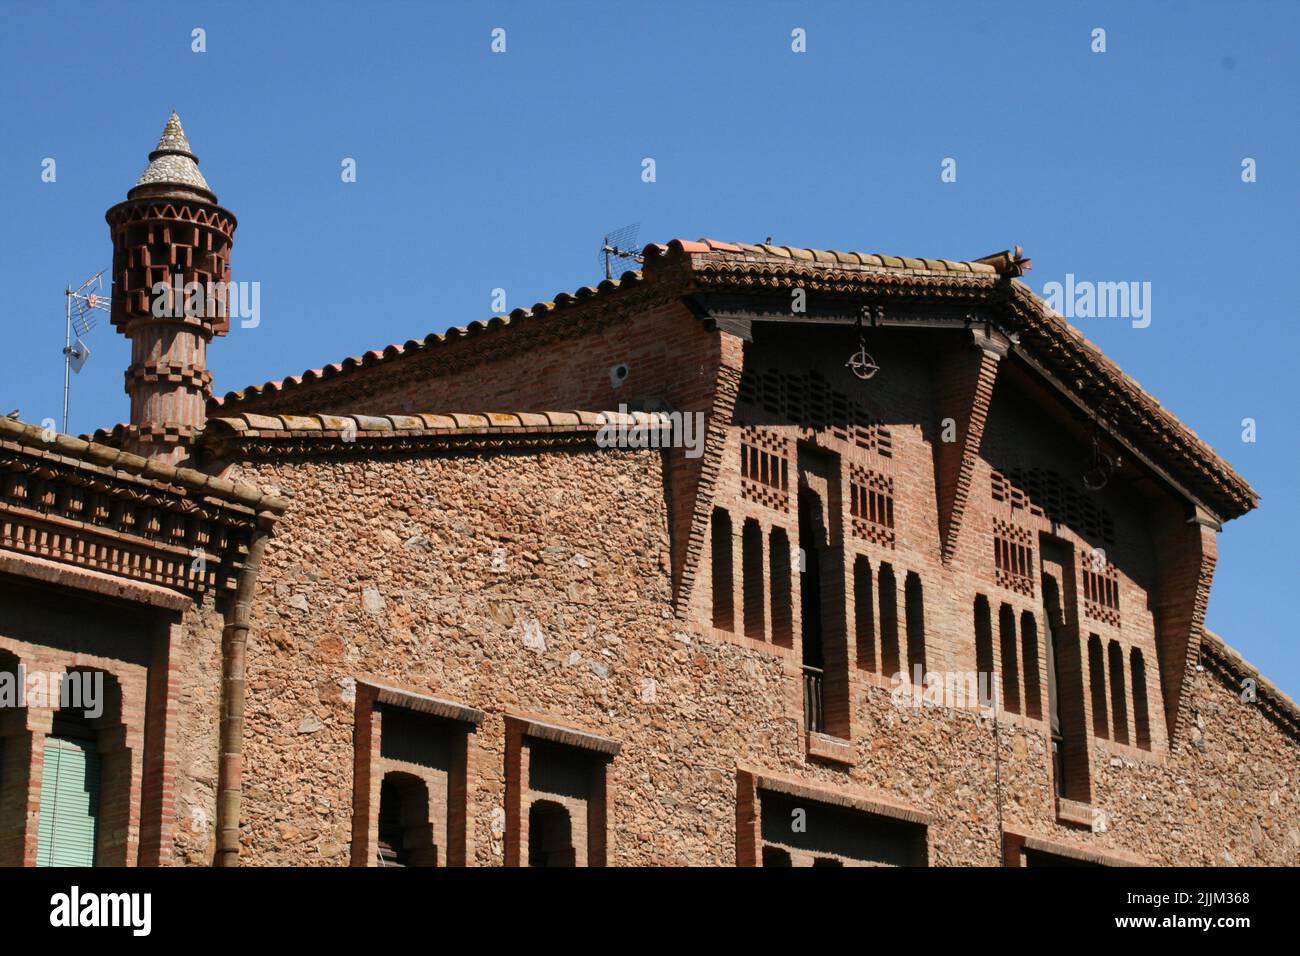 Eine schöne Aufnahme von Details eines alten Gebäudes in Barcelona, Spanien Stockfoto